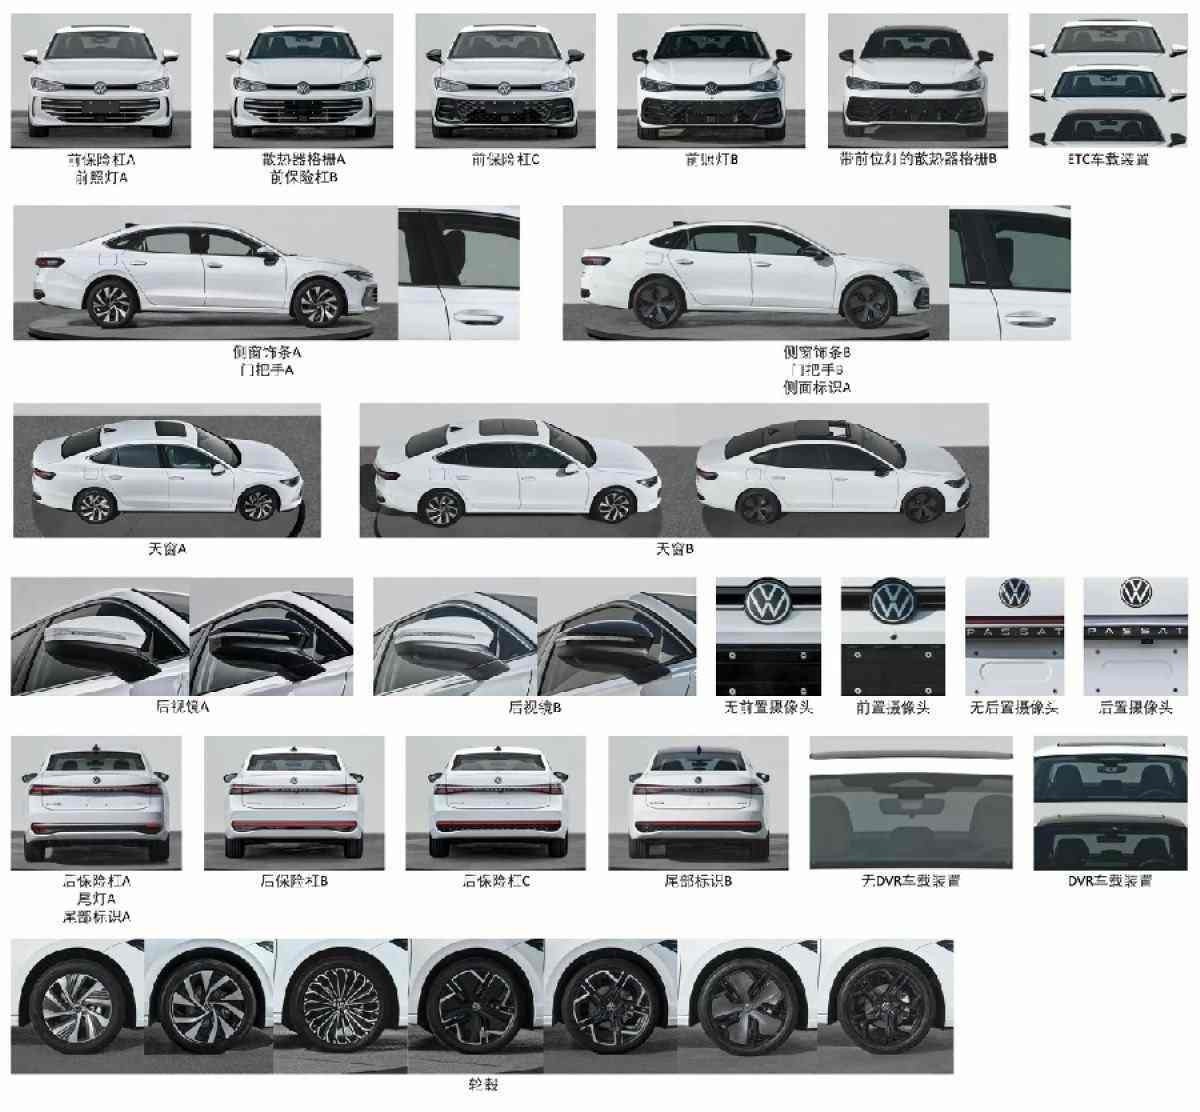 Esquemas que mostram todo o design do exterior do Volkswagen Passat Pro